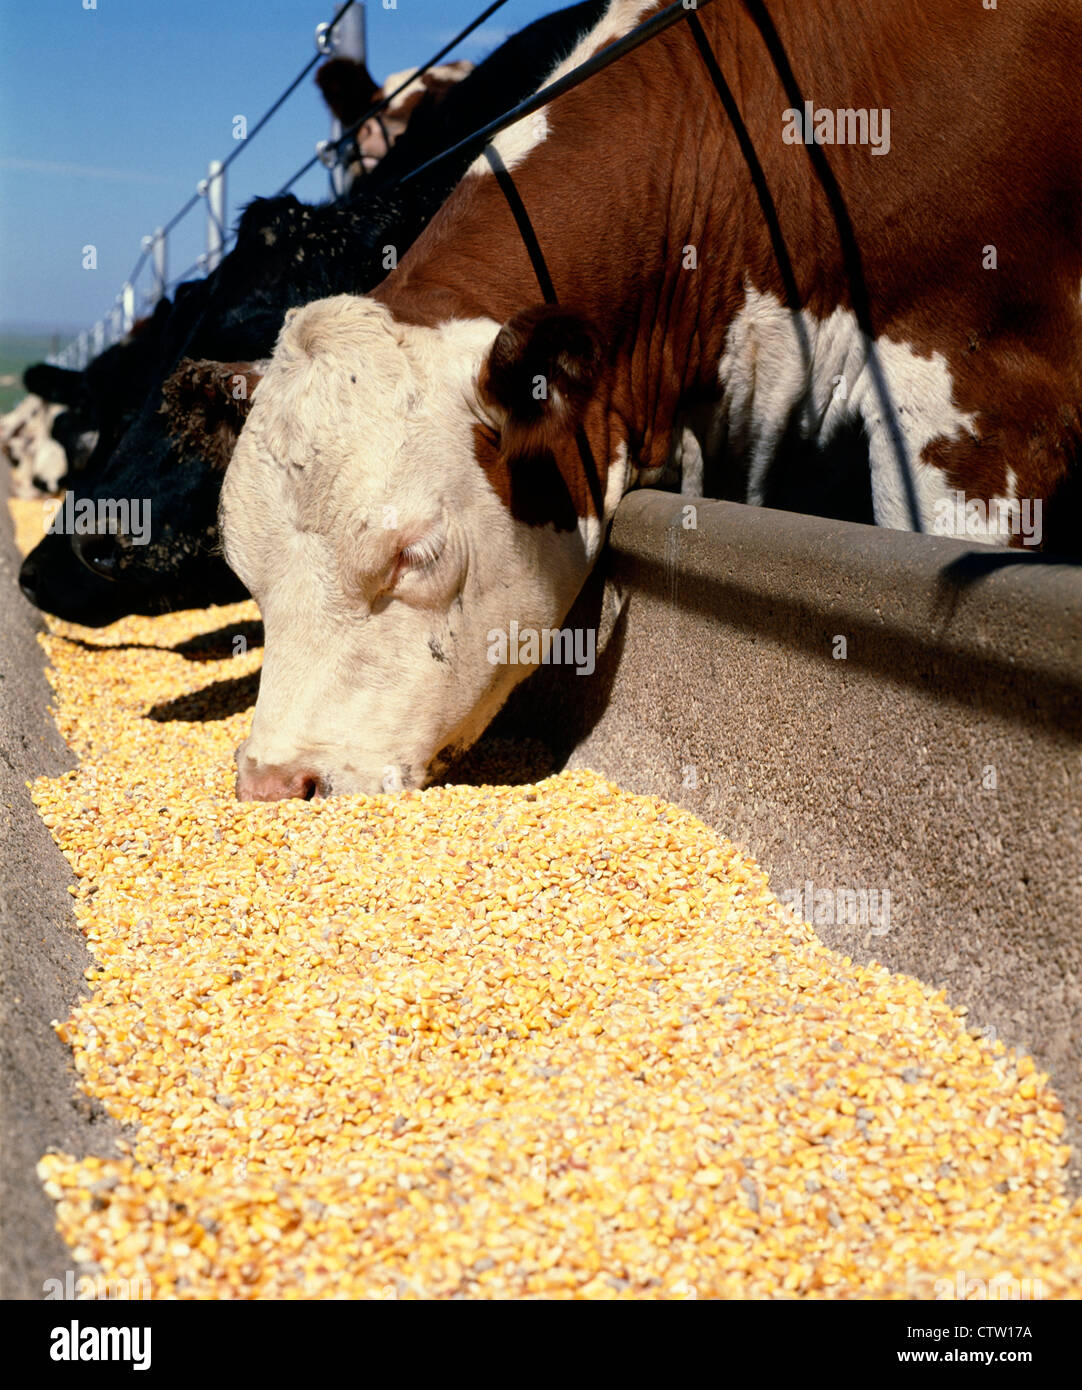 La consommation de maïs égrené STEERS / TEXAS RATION Banque D'Images